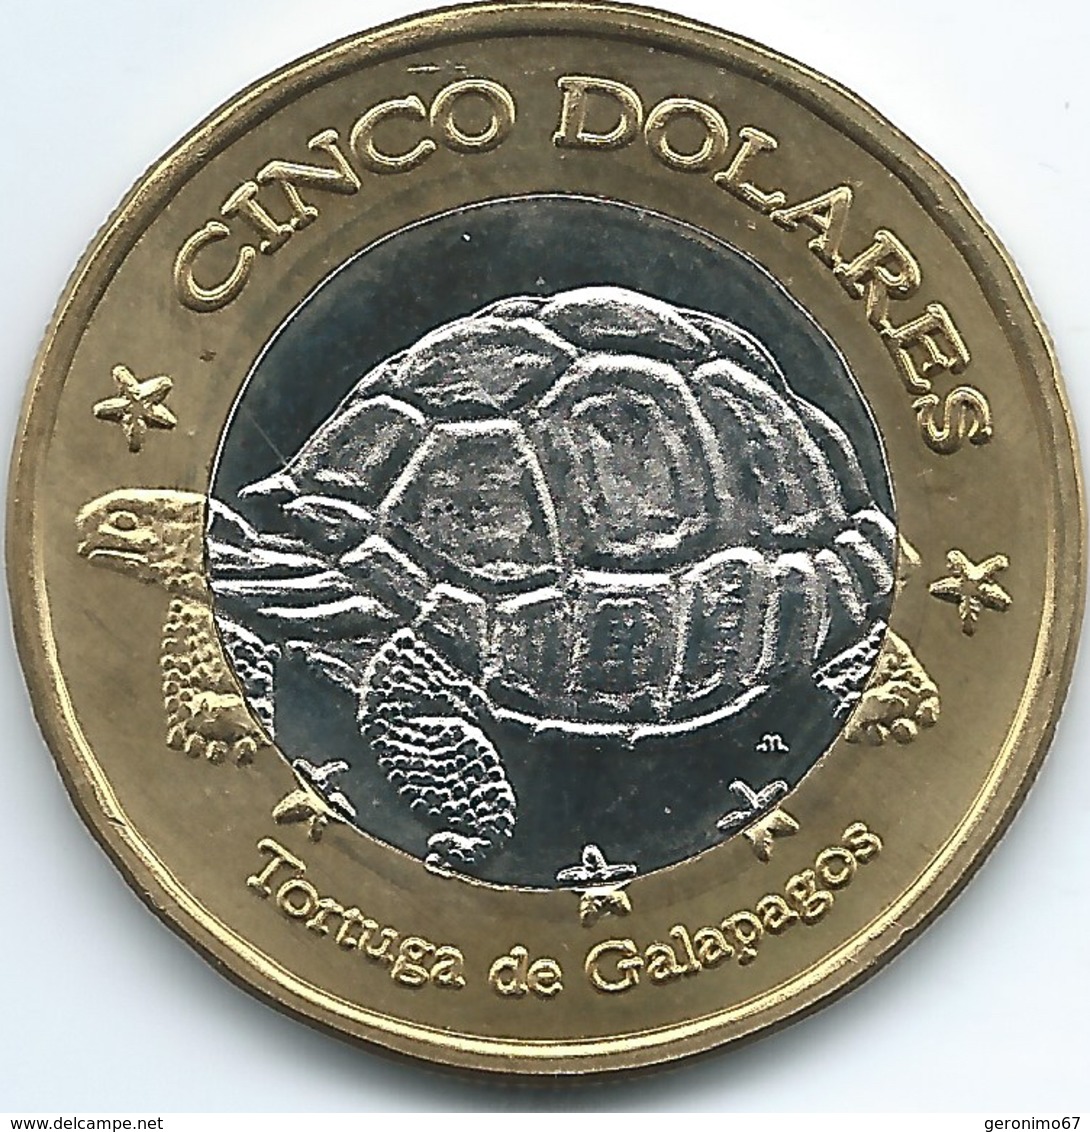 Ecuador / Galapagos Islands - 2008 - 5 Dólars - Ecuador